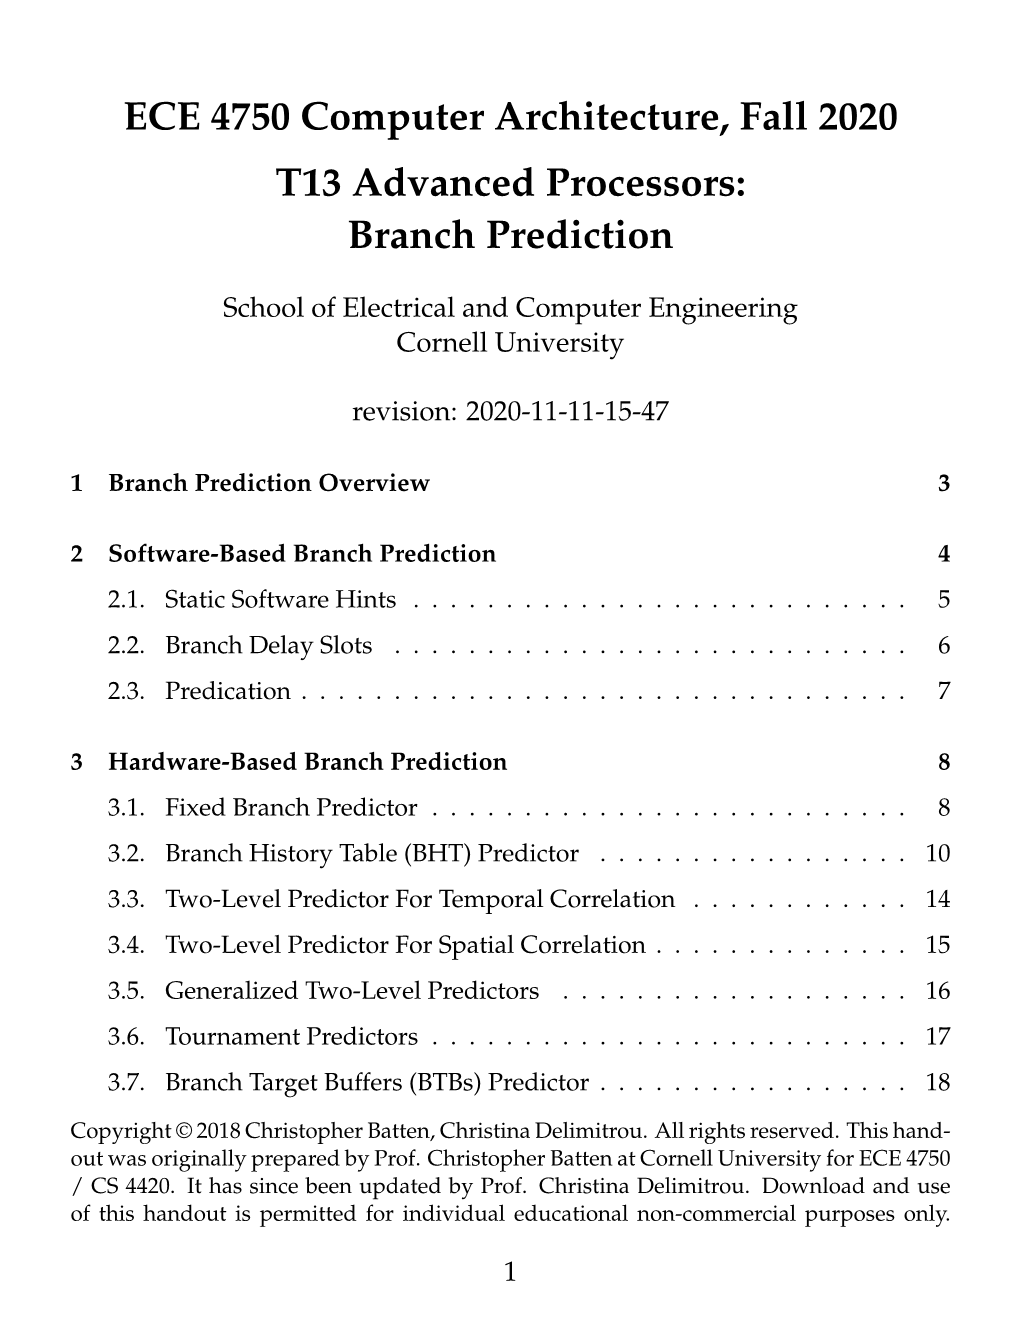 T13: Advanced Processors – Branch Prediction